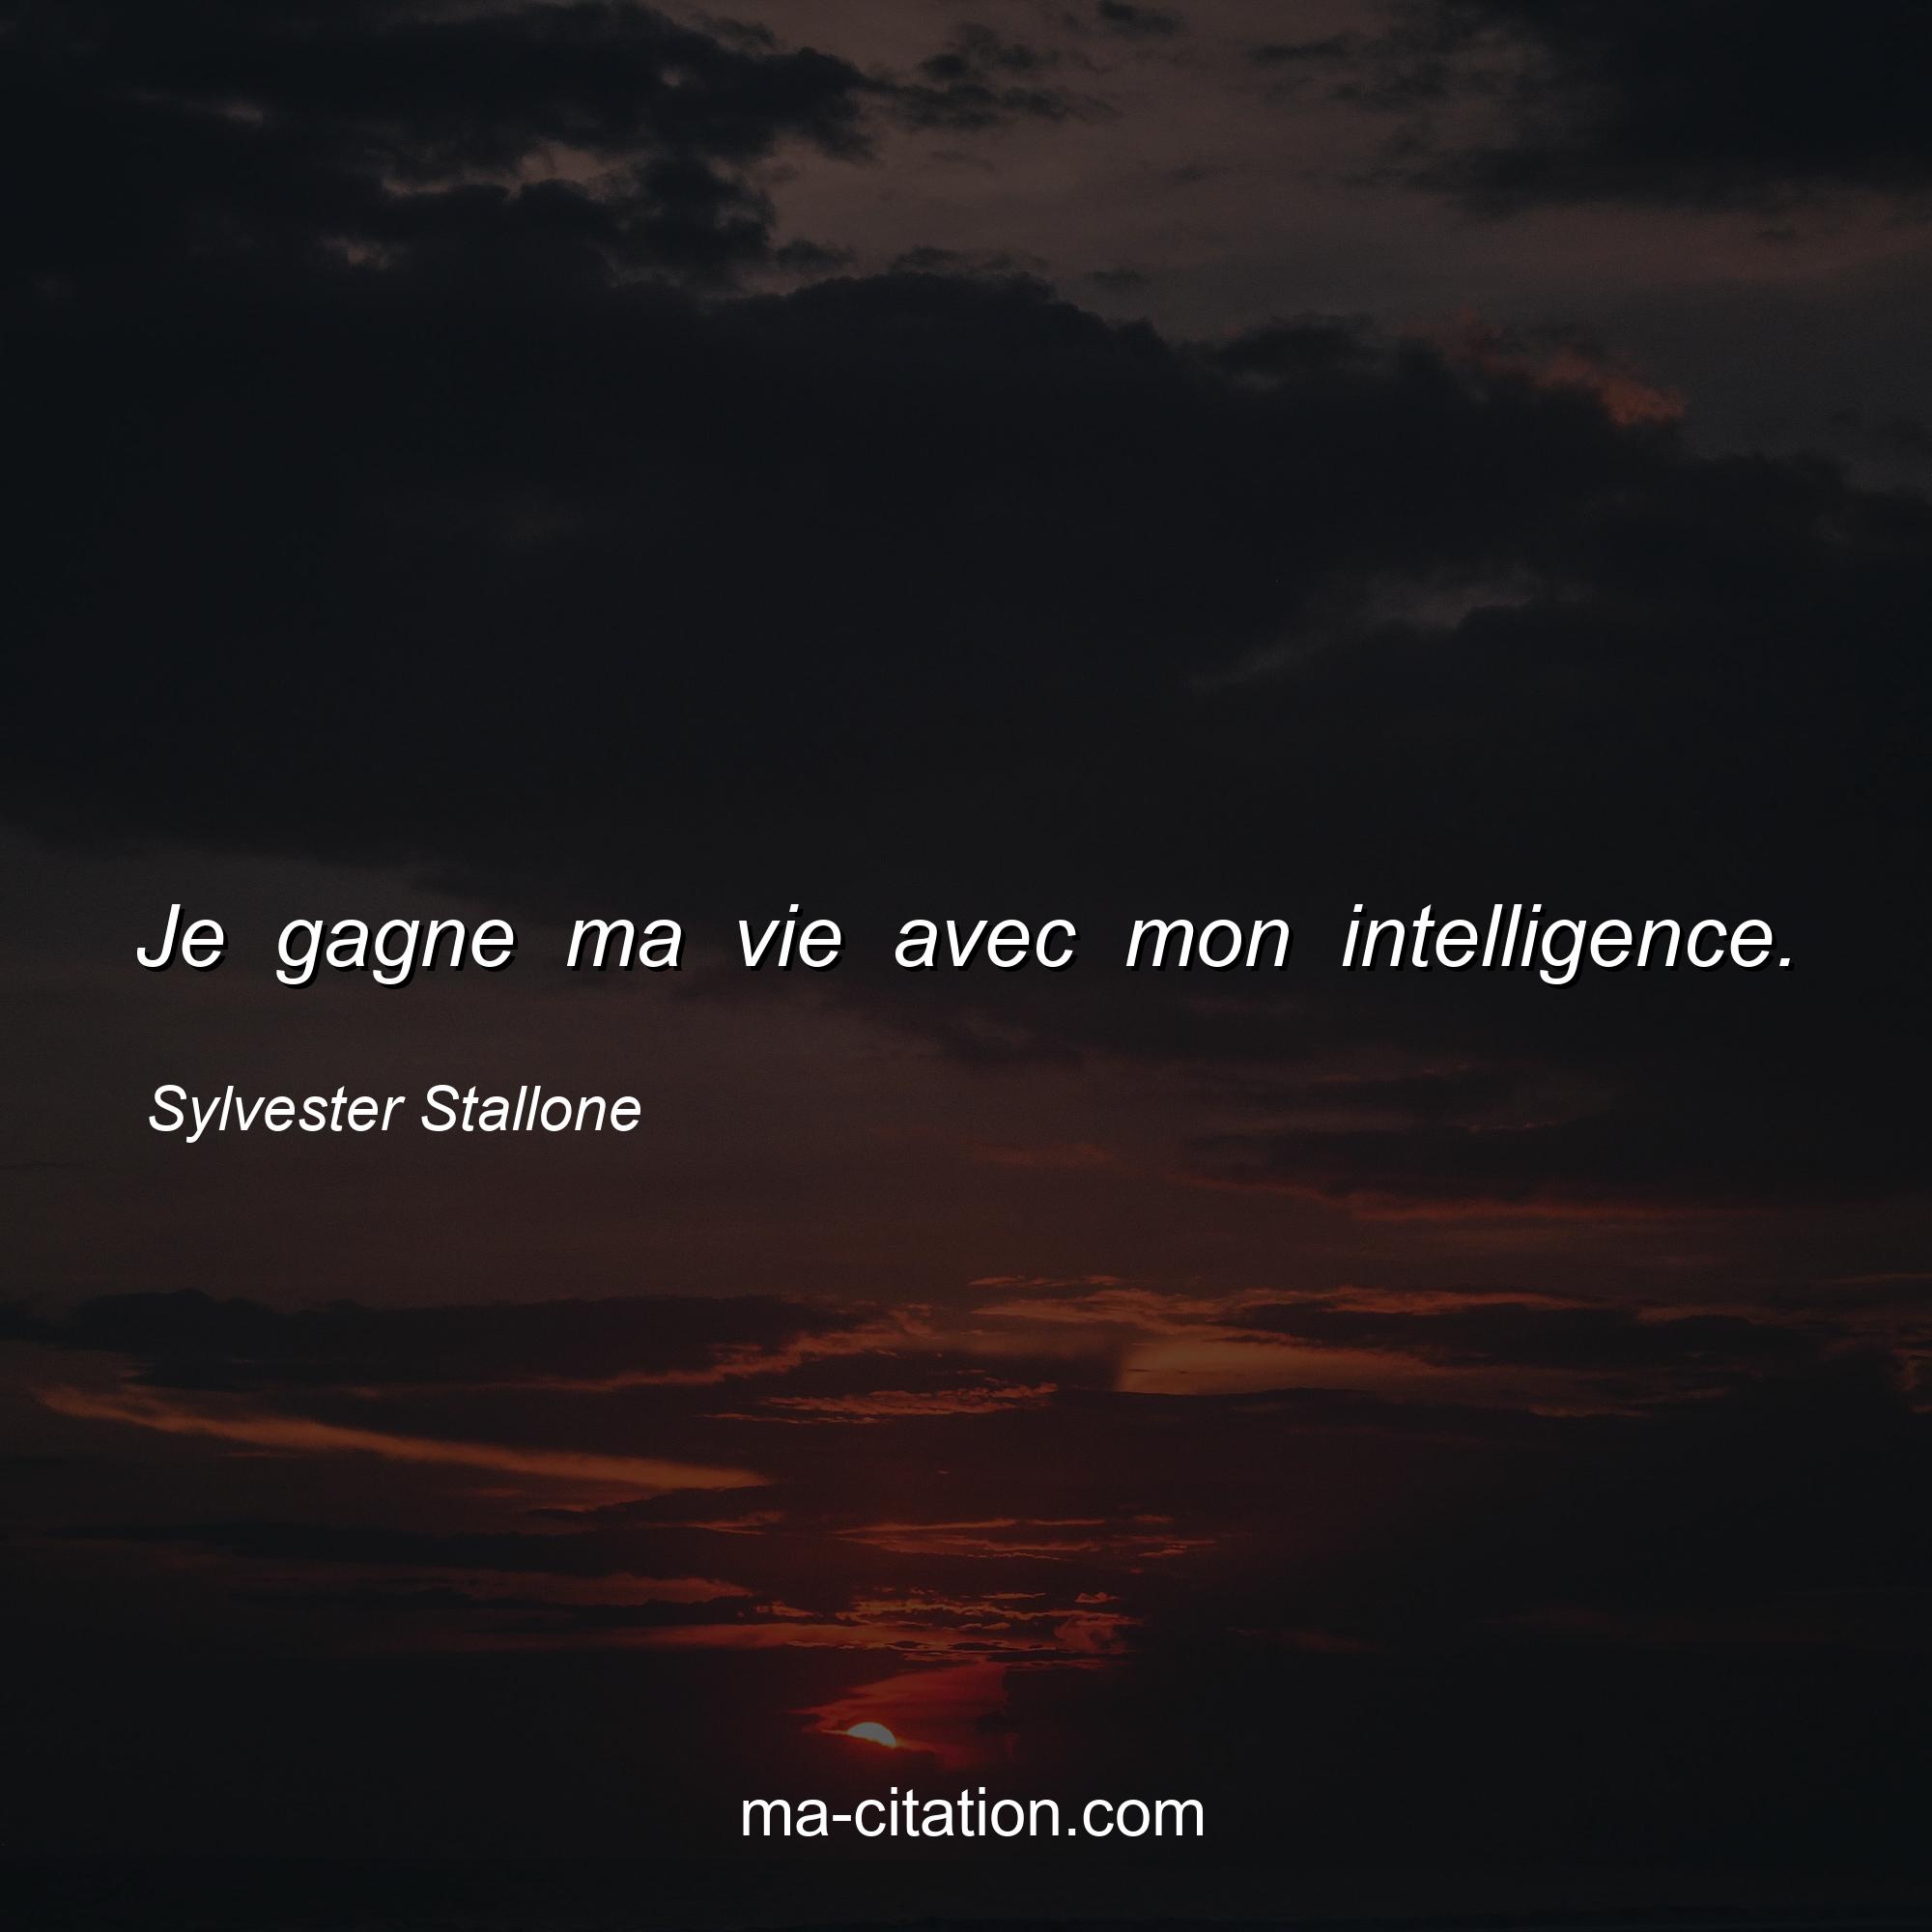 Sylvester Stallone : Je gagne ma vie avec mon intelligence.